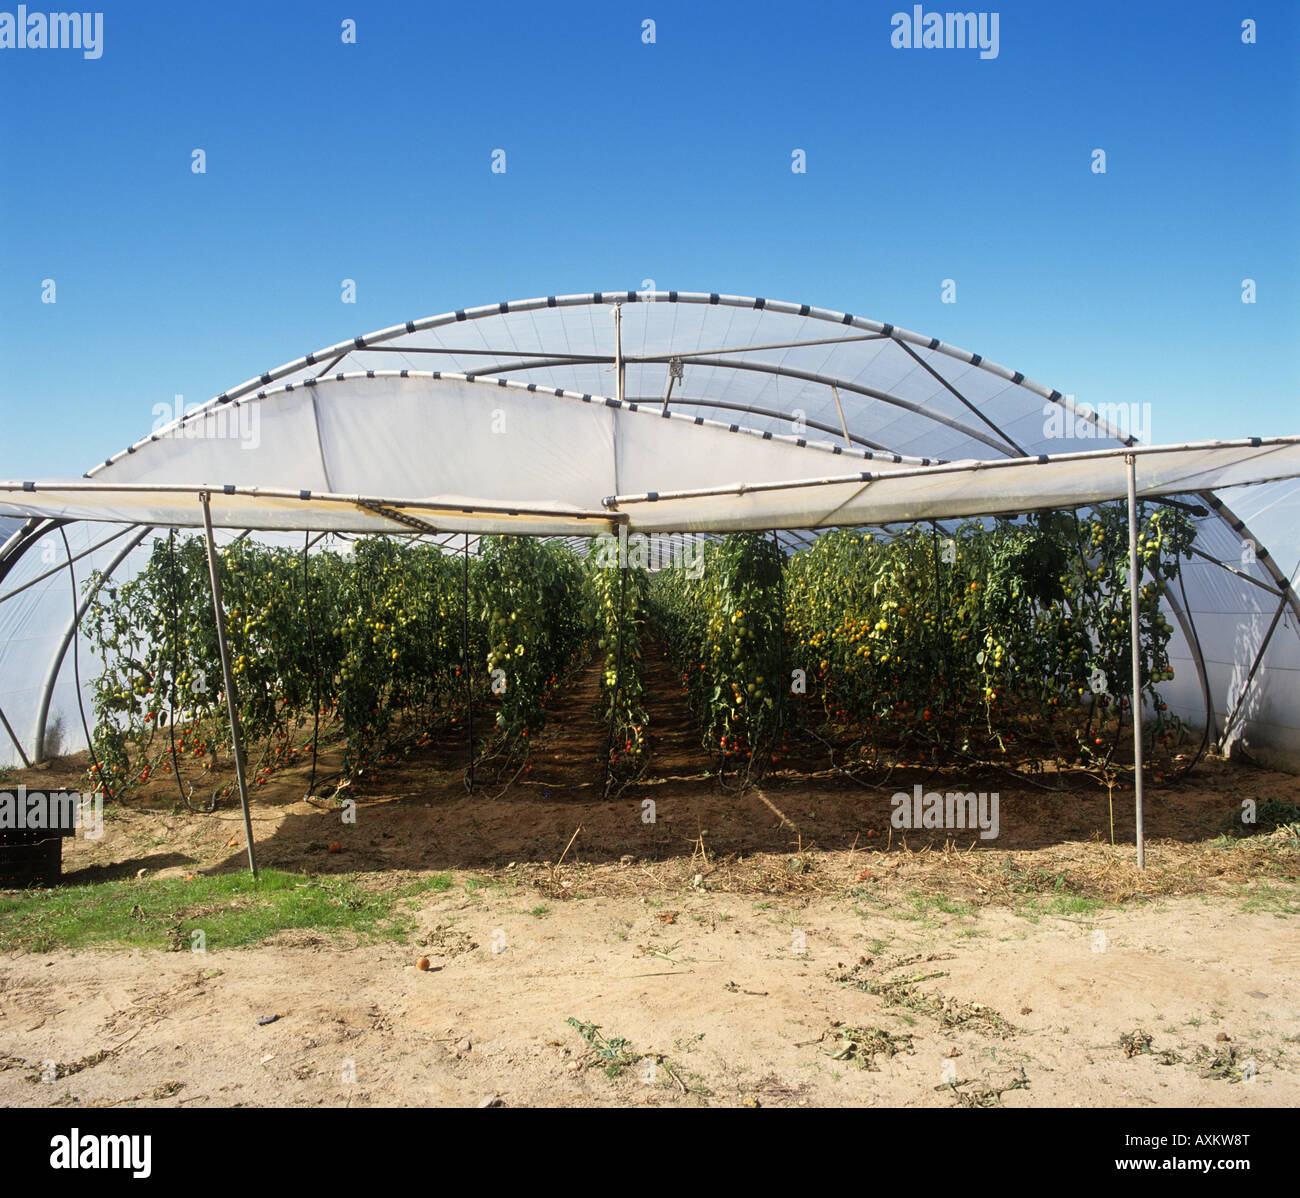 Casa in politene con la parte anteriore sollevata per mostrare il pomodoro maturo raccolto cresciuto all'interno del Portogallo Foto Stock